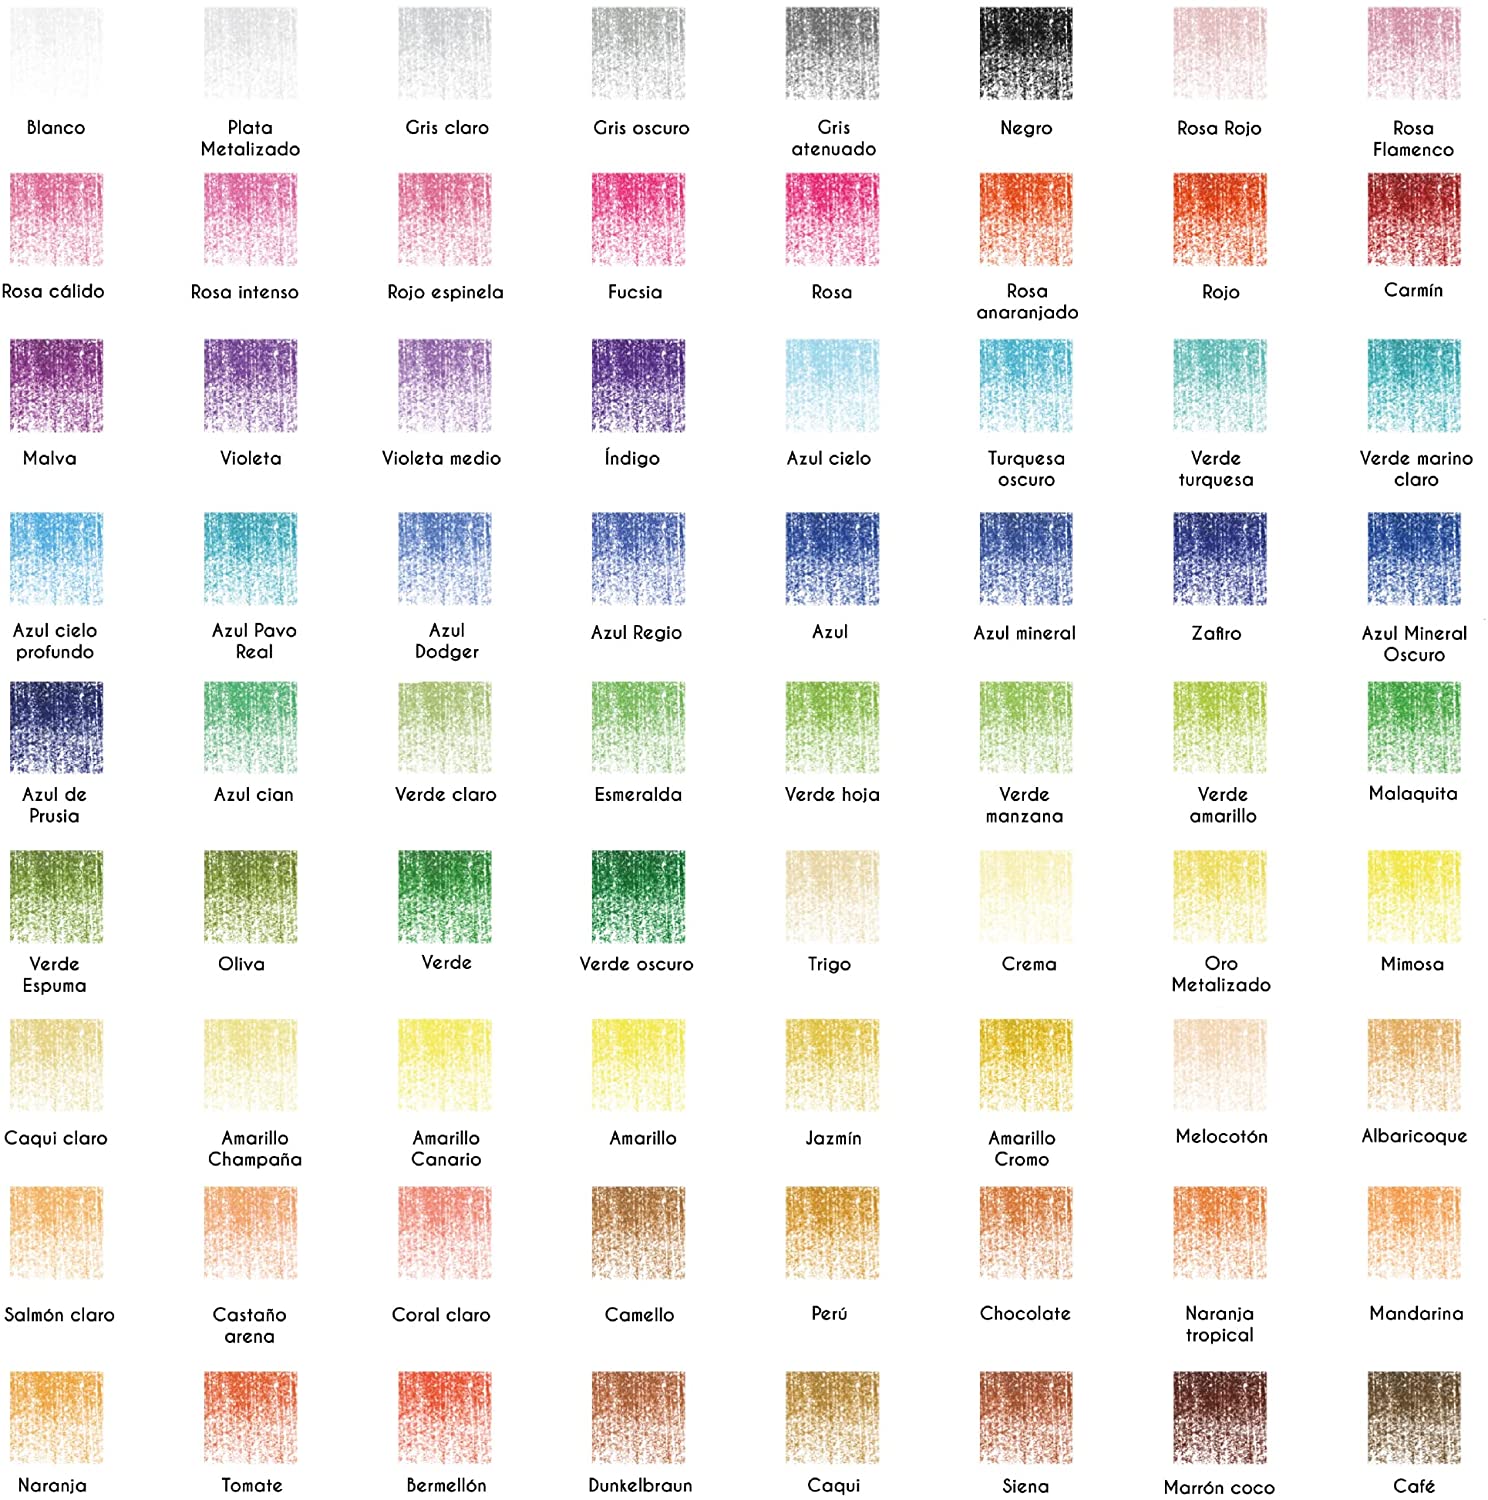 160 Crayons de Couleur (Numérotés) Zenacolor - Rangement Facile